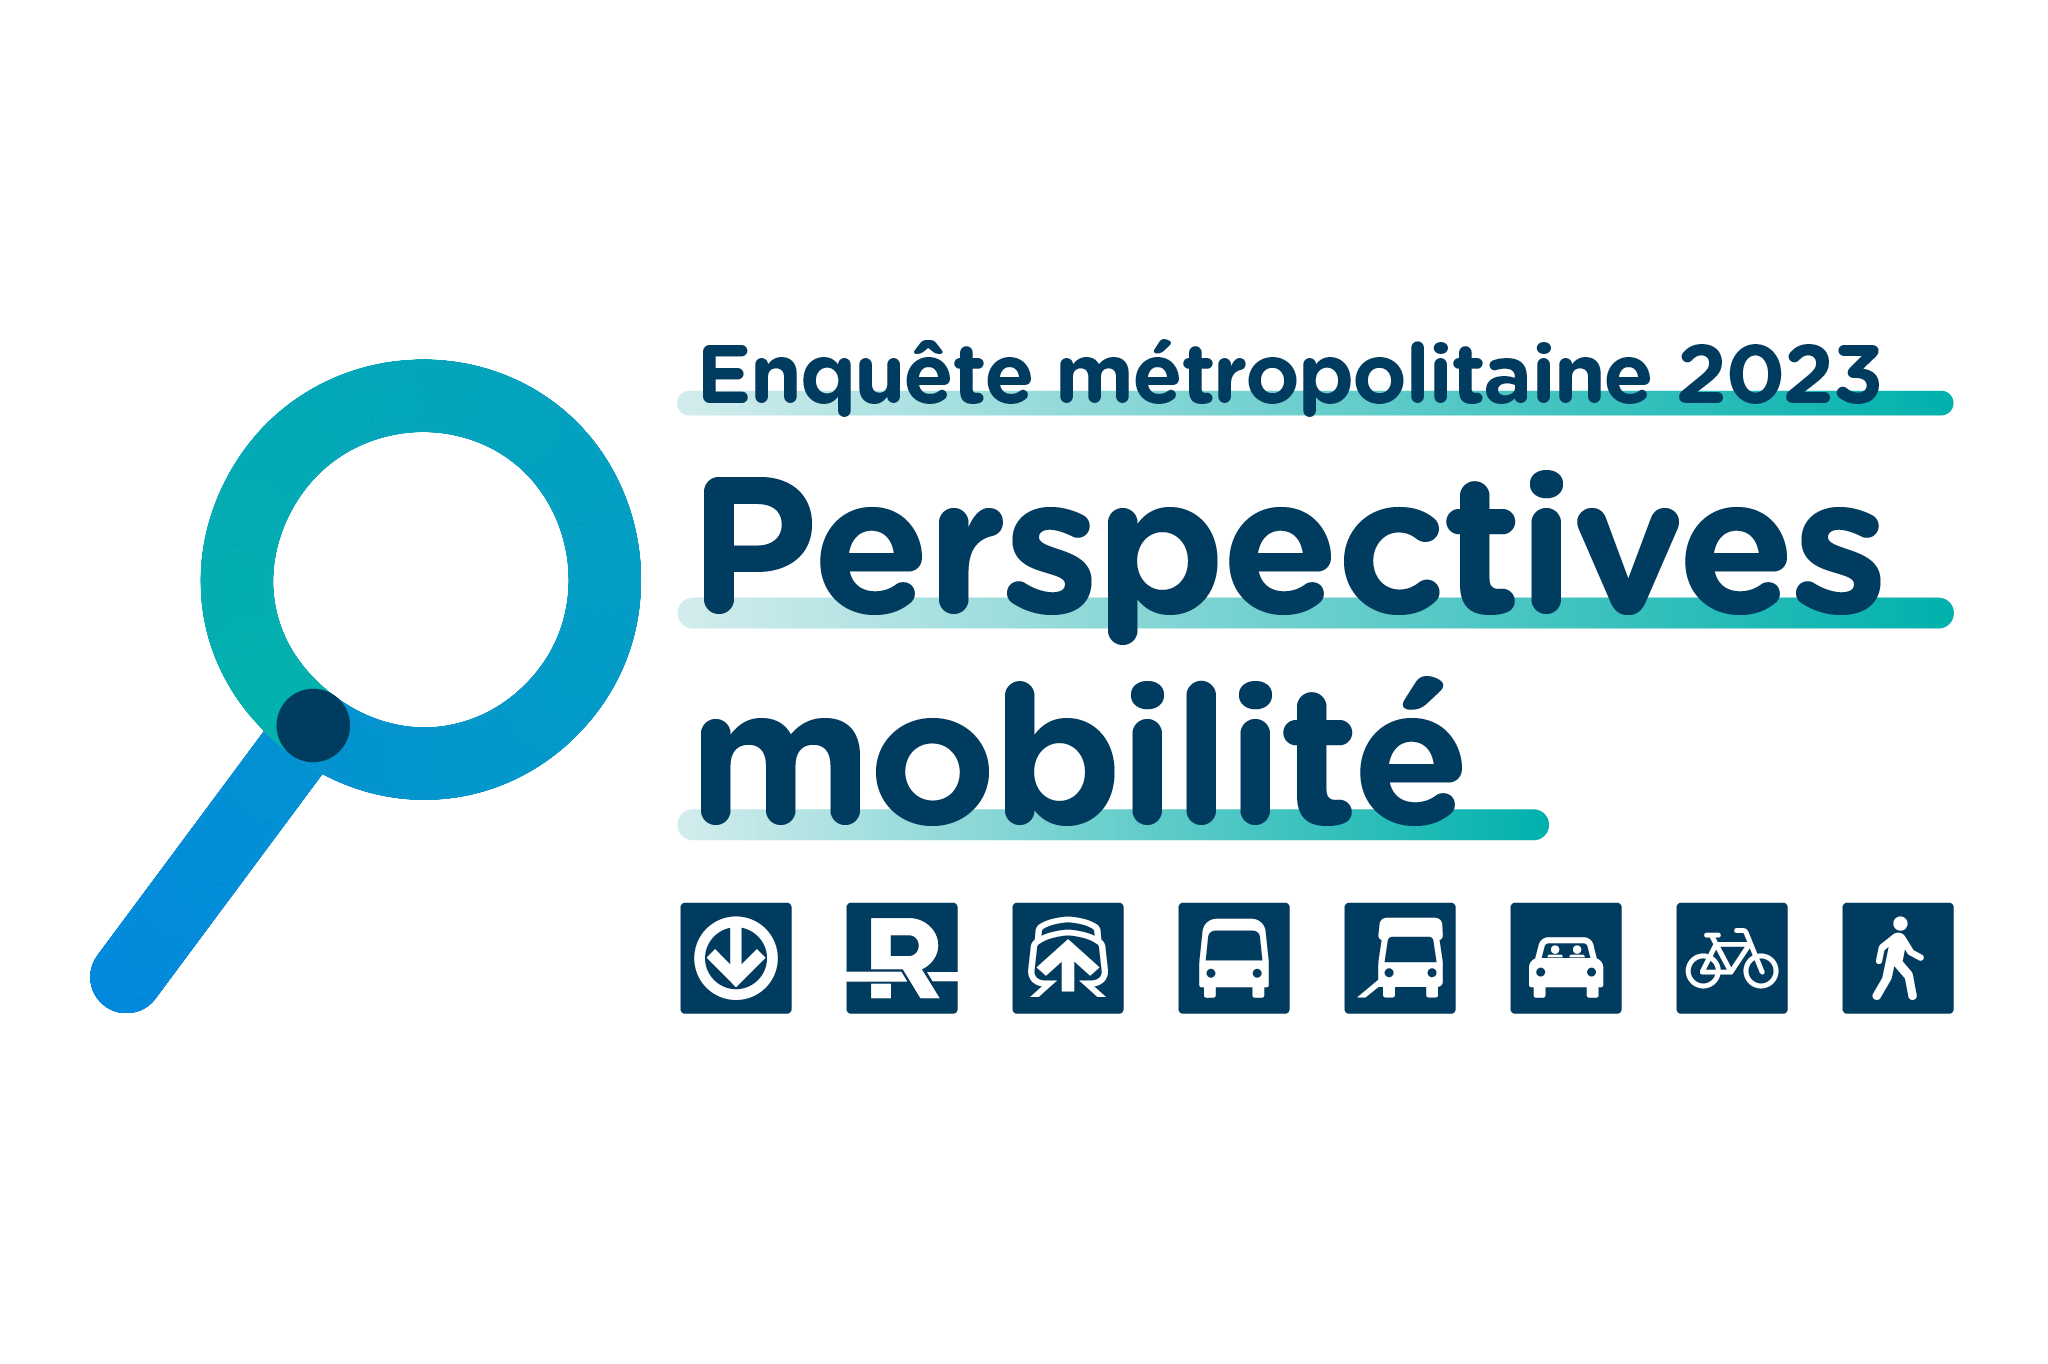 Près de 110 000 questionnaires reçus pour l’enquête métropolitaine 2023 Perspectives mobilité 